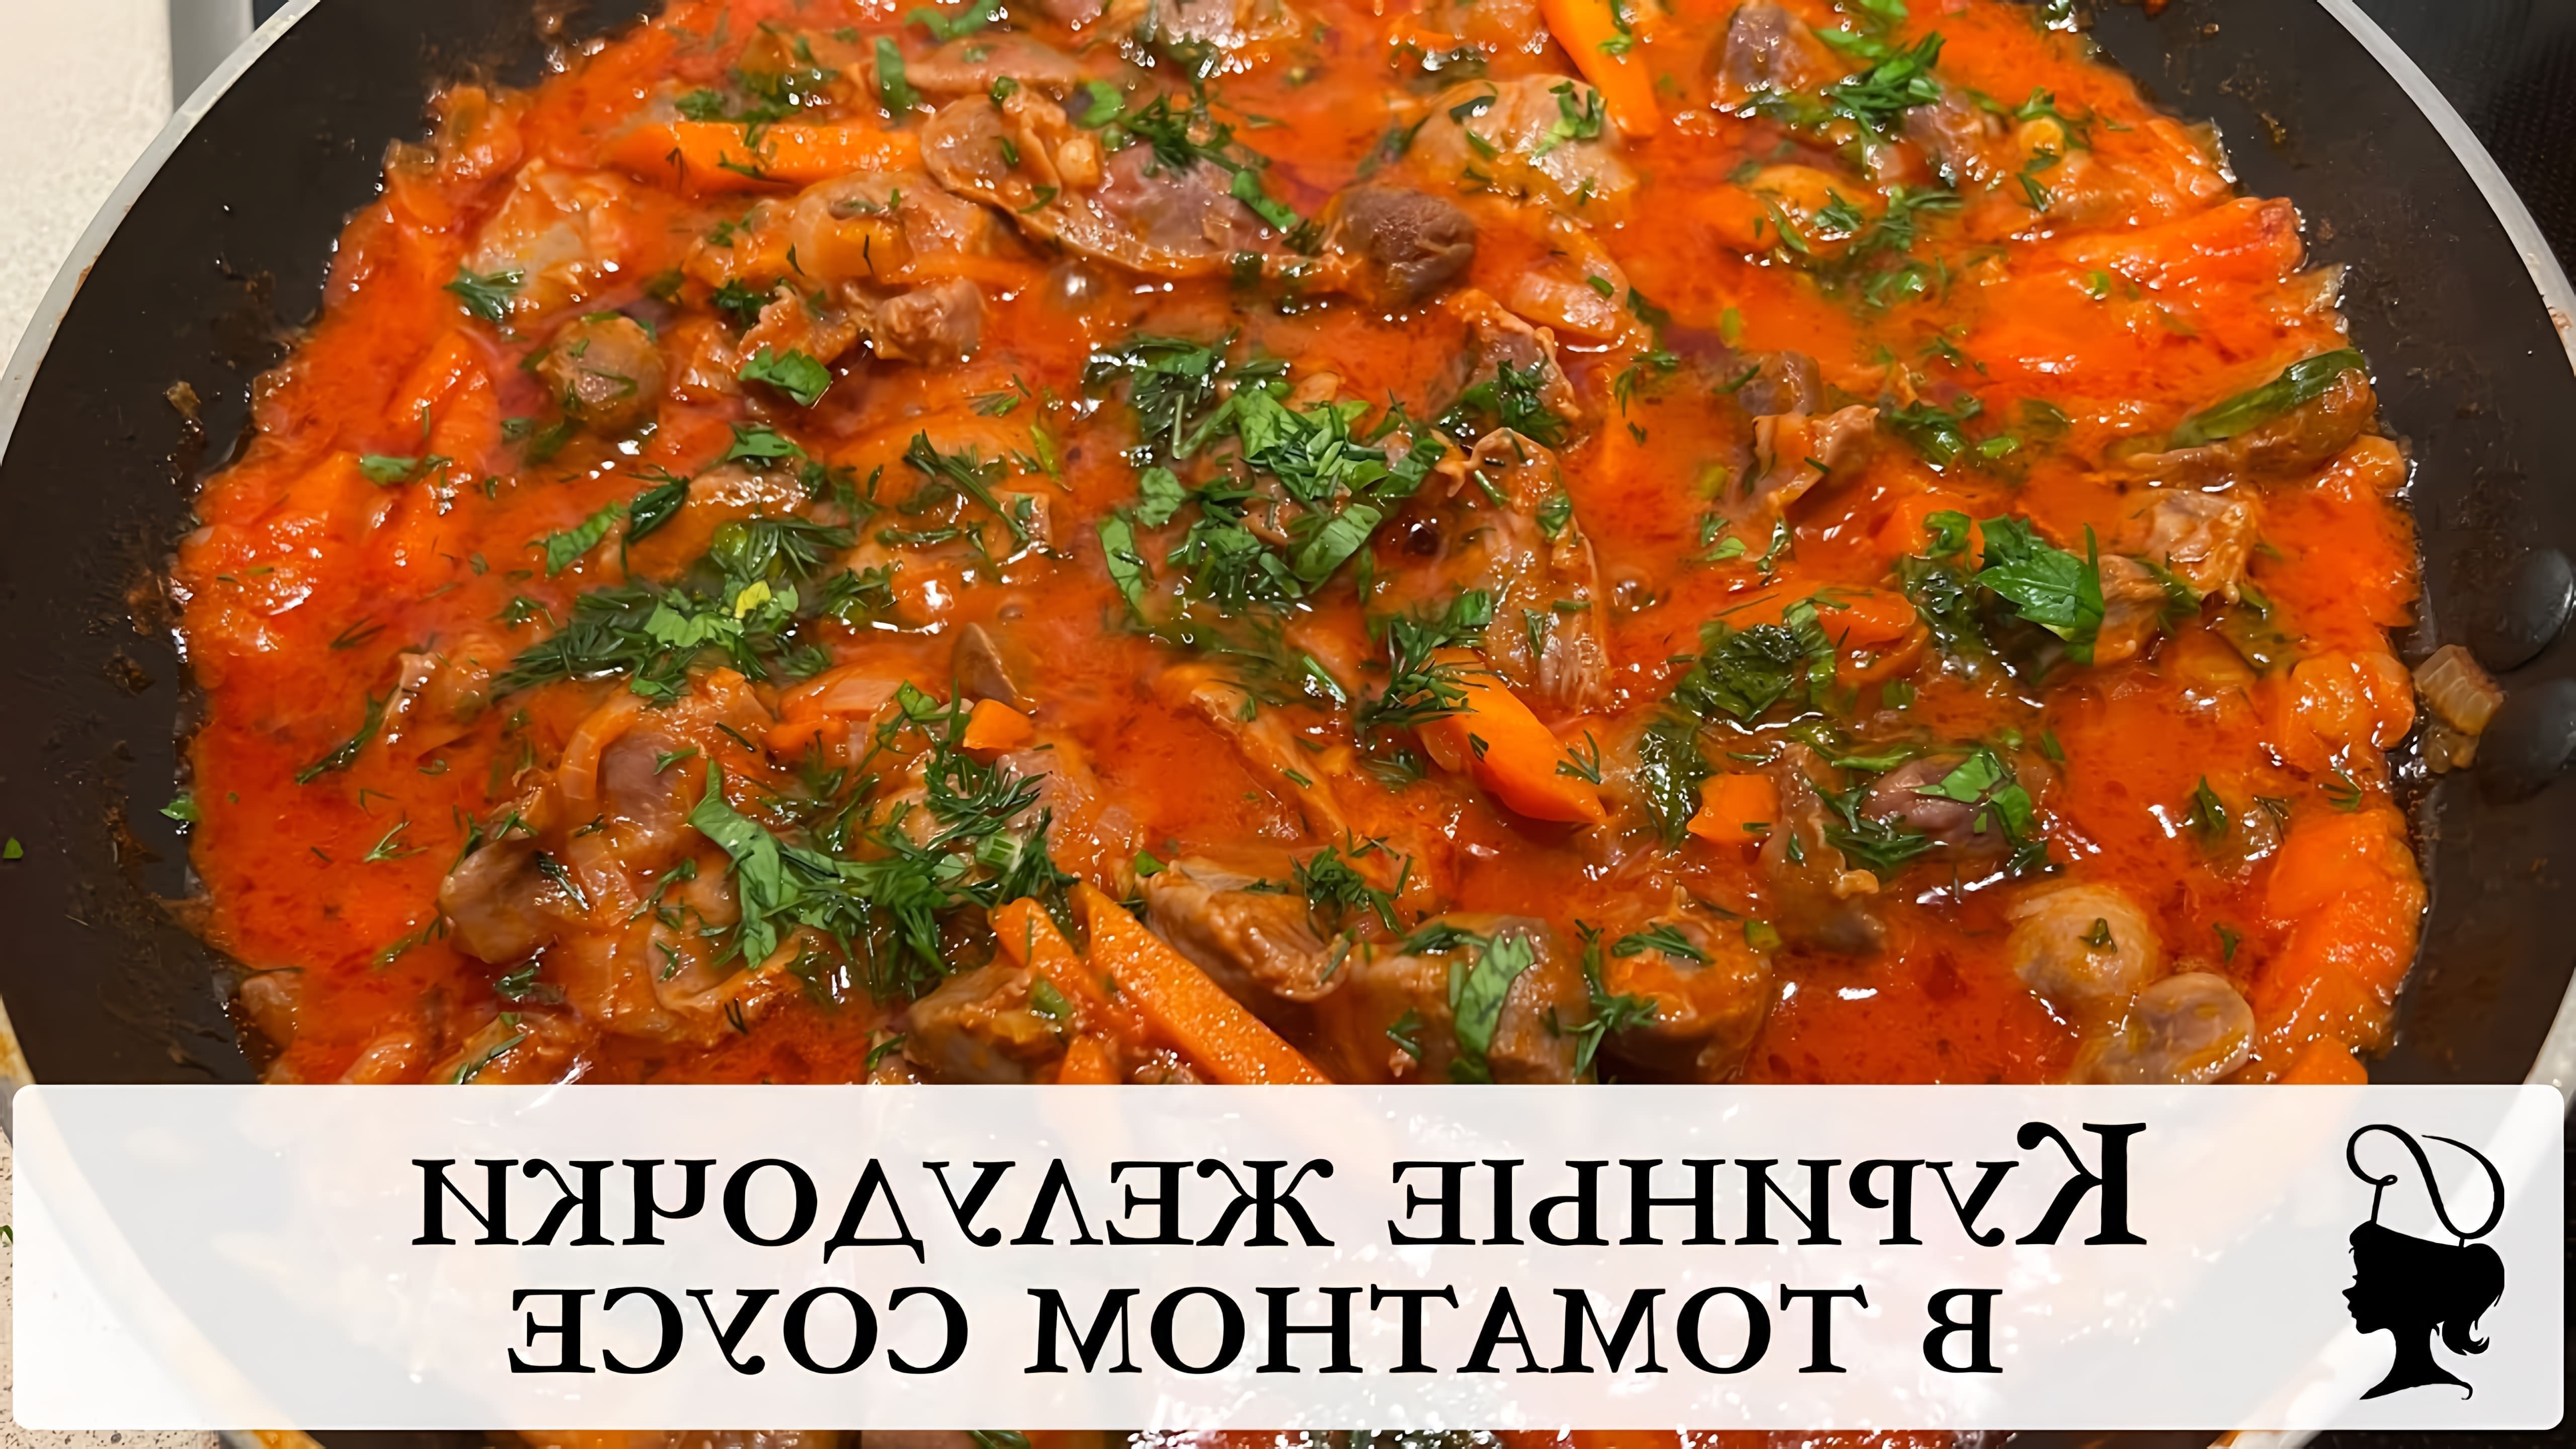 В этом видео демонстрируется рецепт приготовления куриных желудочков в томатном соусе